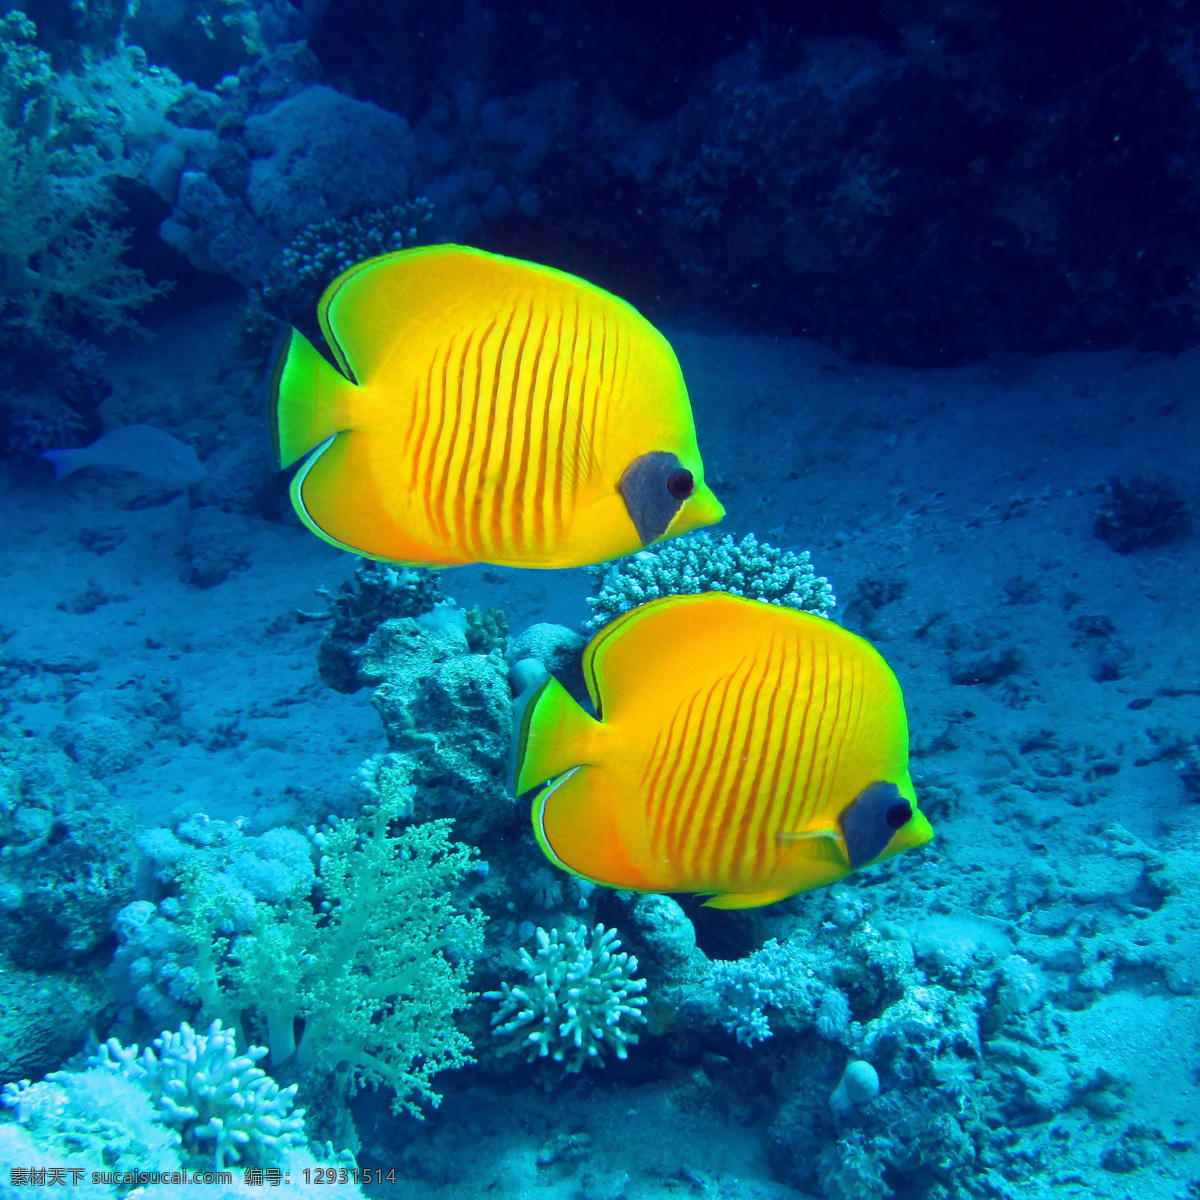 海底水中的鱼 鱼 鱼类动物 海底生物 水中生物 海洋生物 海洋动物 动物世界 生物世界 青色 天蓝色